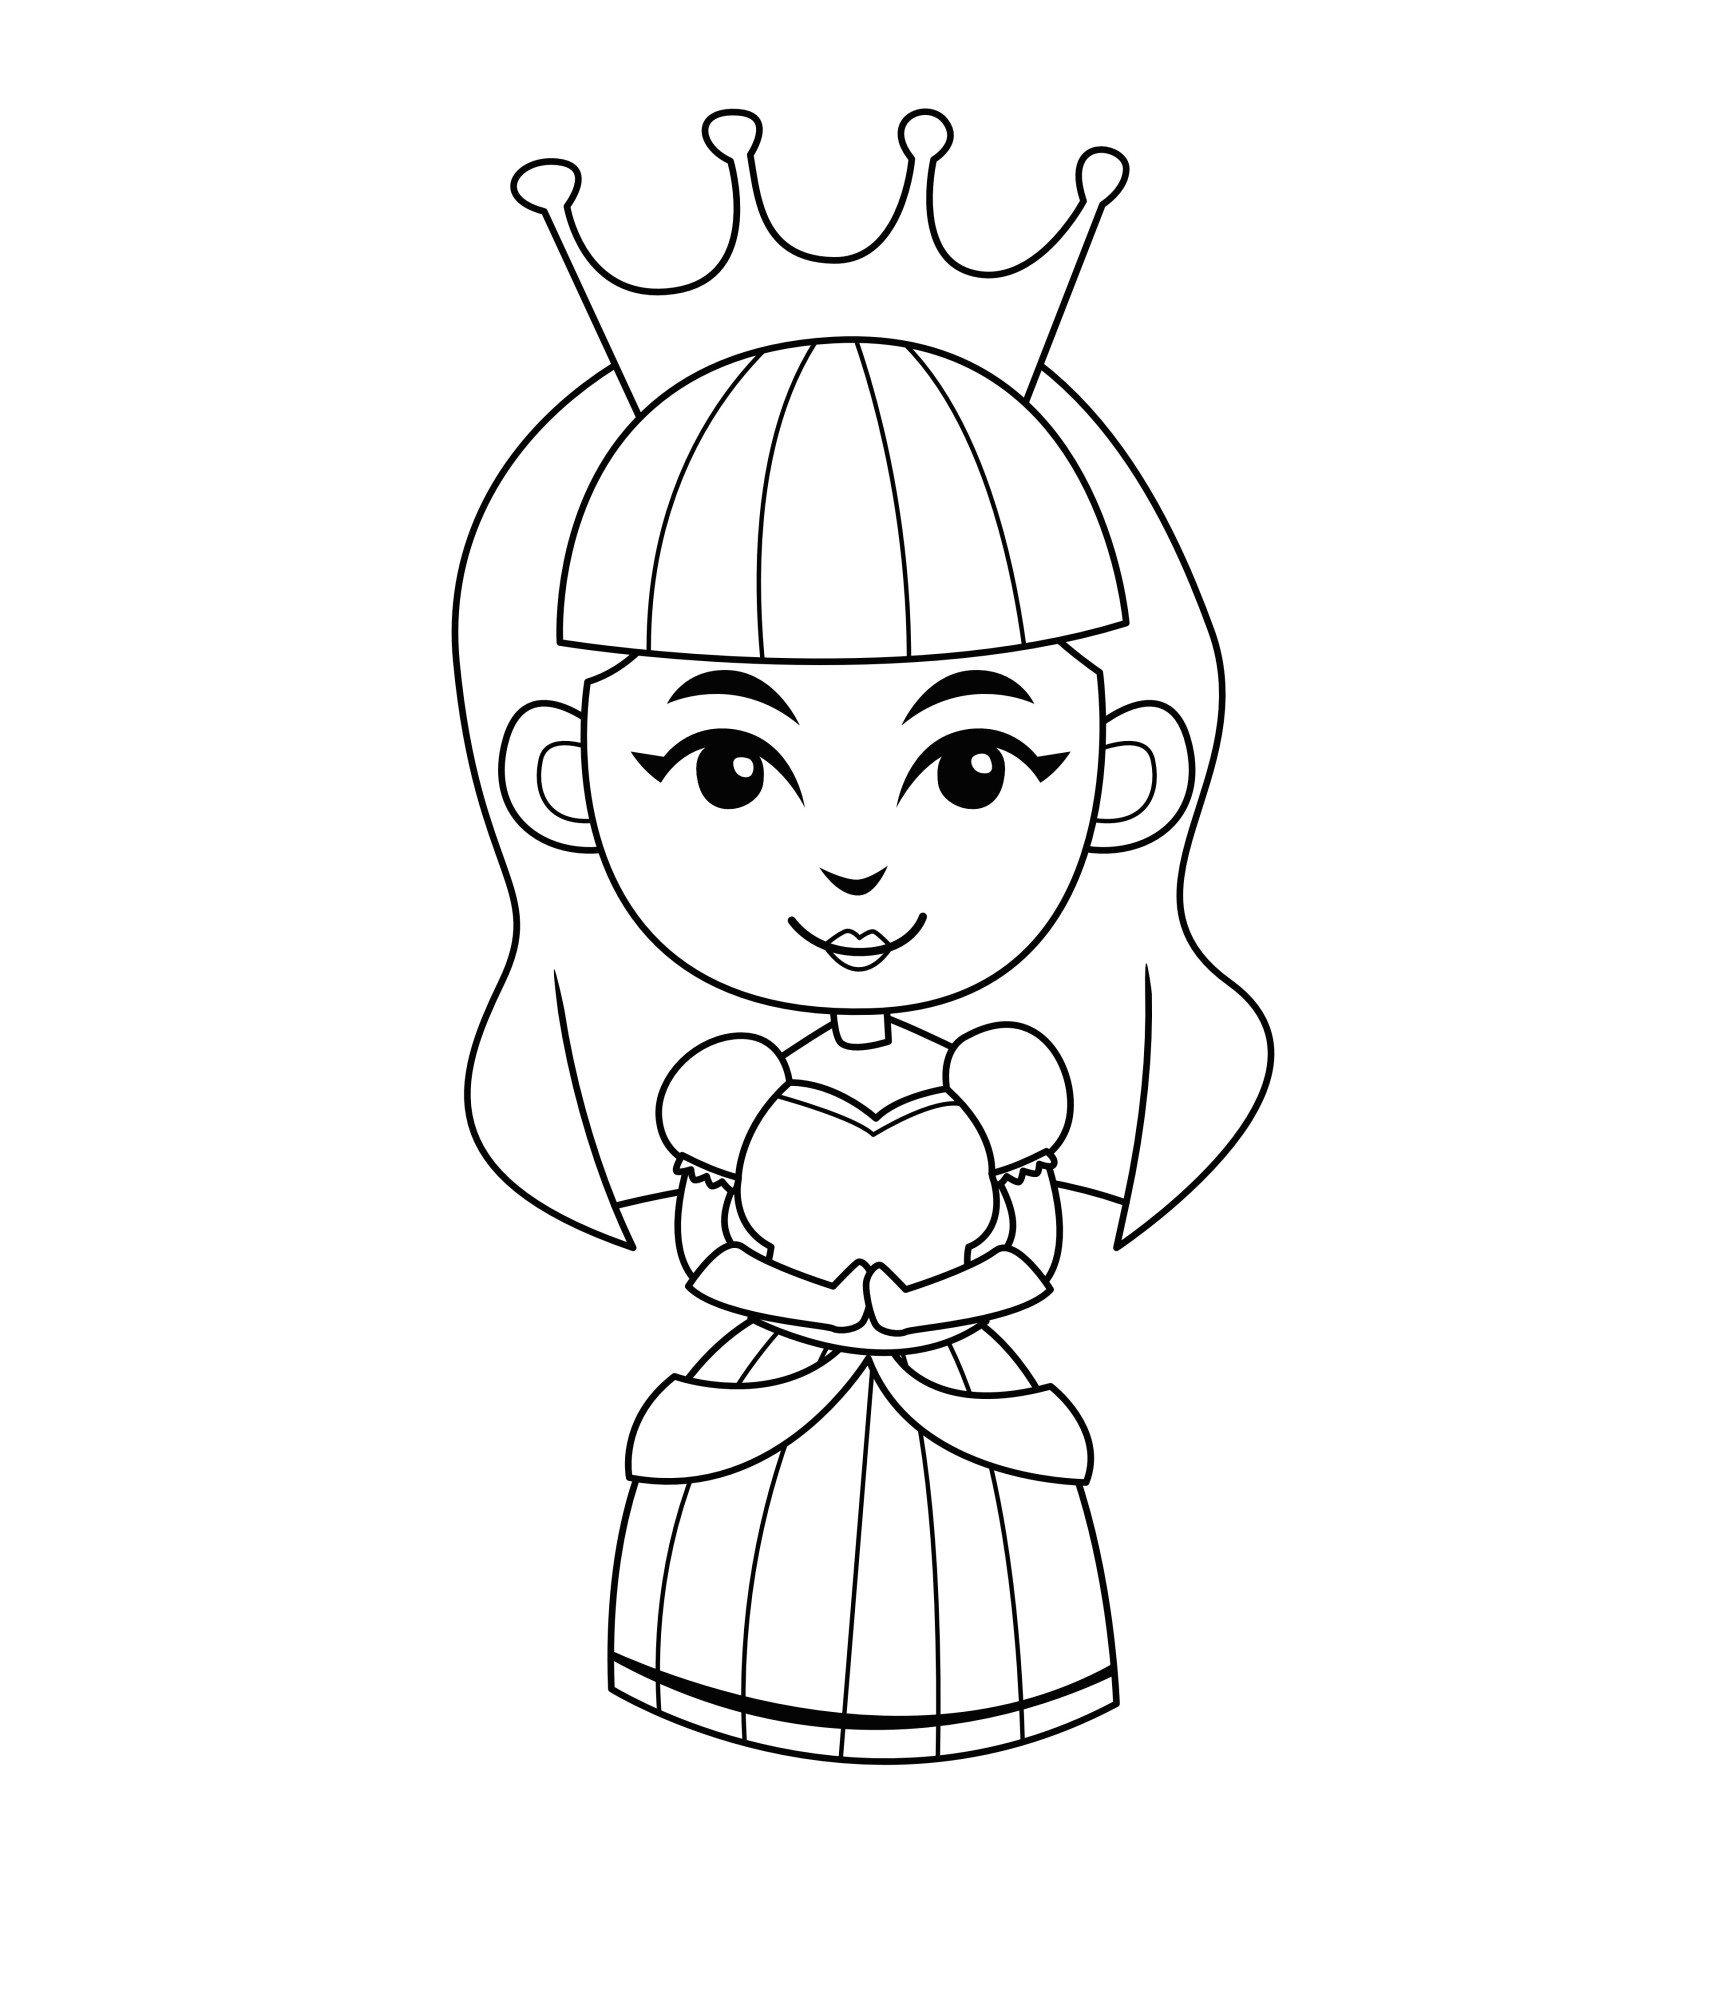 Раскраска для детей: прекрасная принцесса с короной